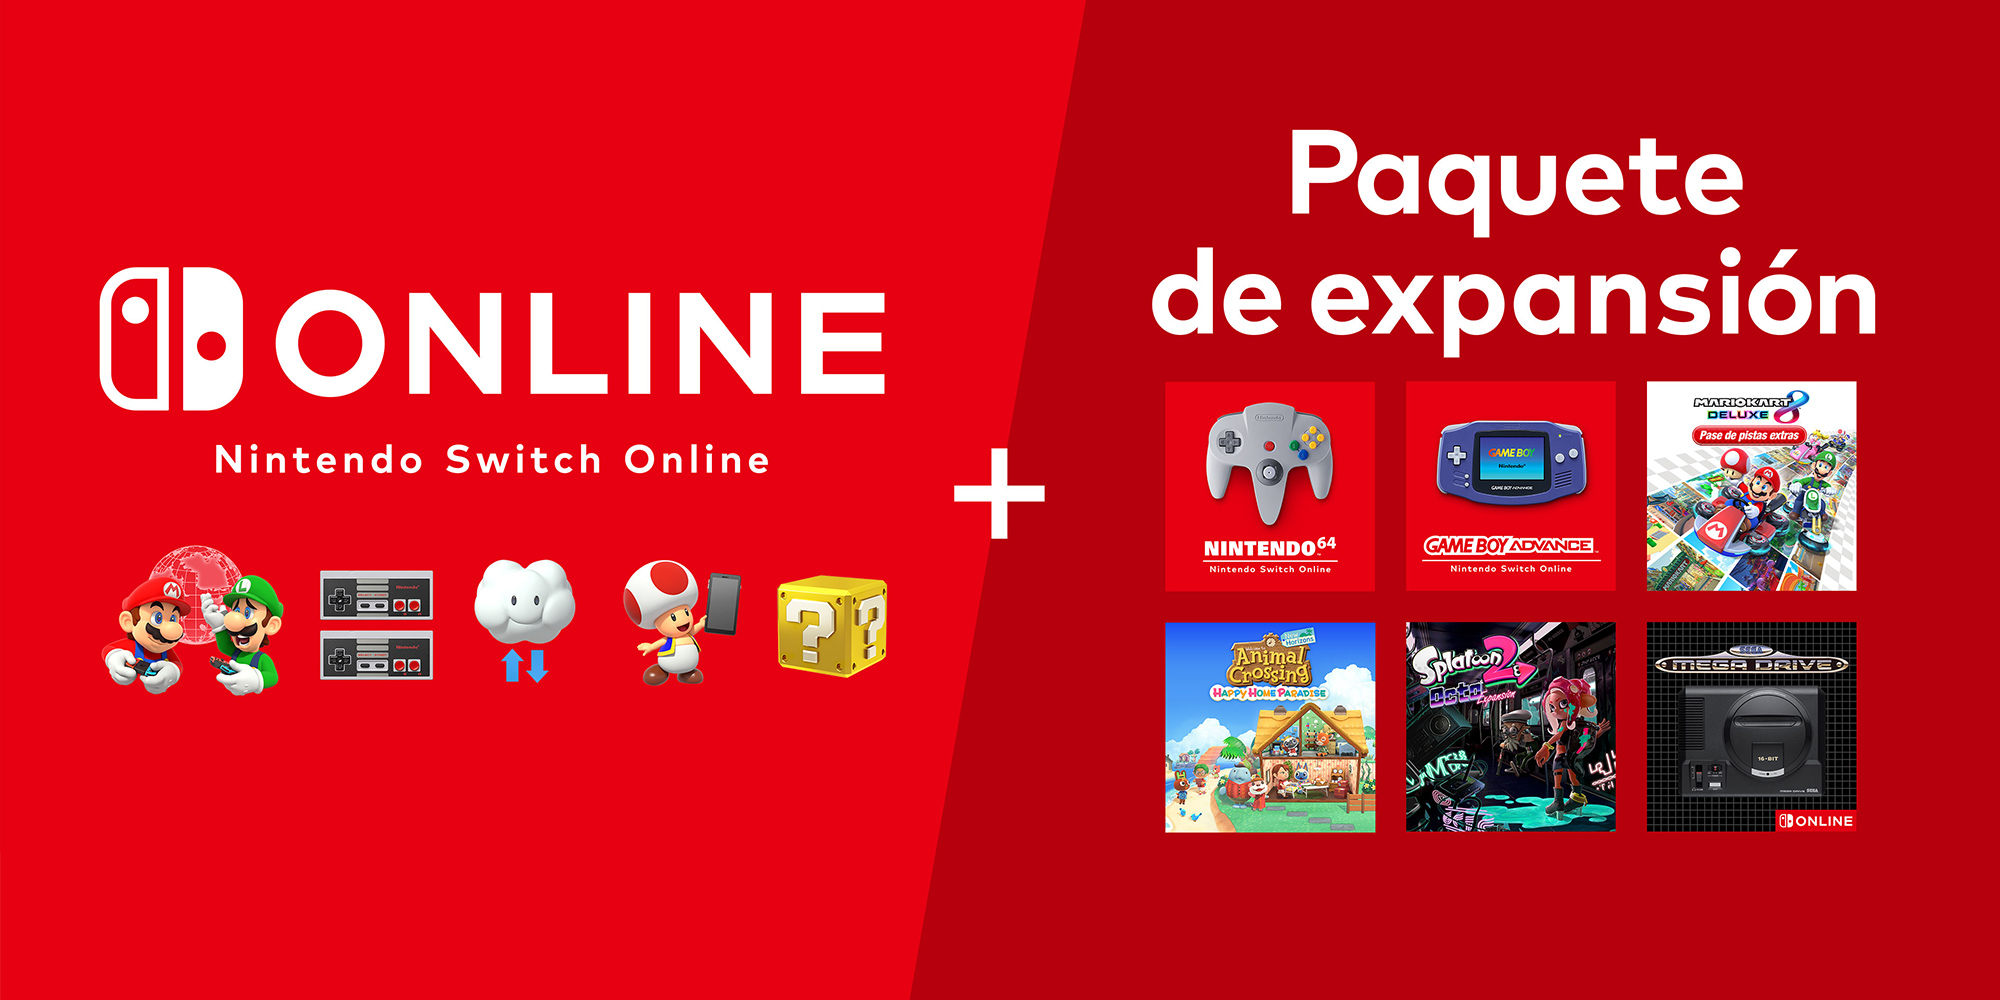 Juicio Todo tipo de Insatisfactorio Nintendo Switch Online + Paquete de expansión | Nintendo Switch Online |  Nintendo